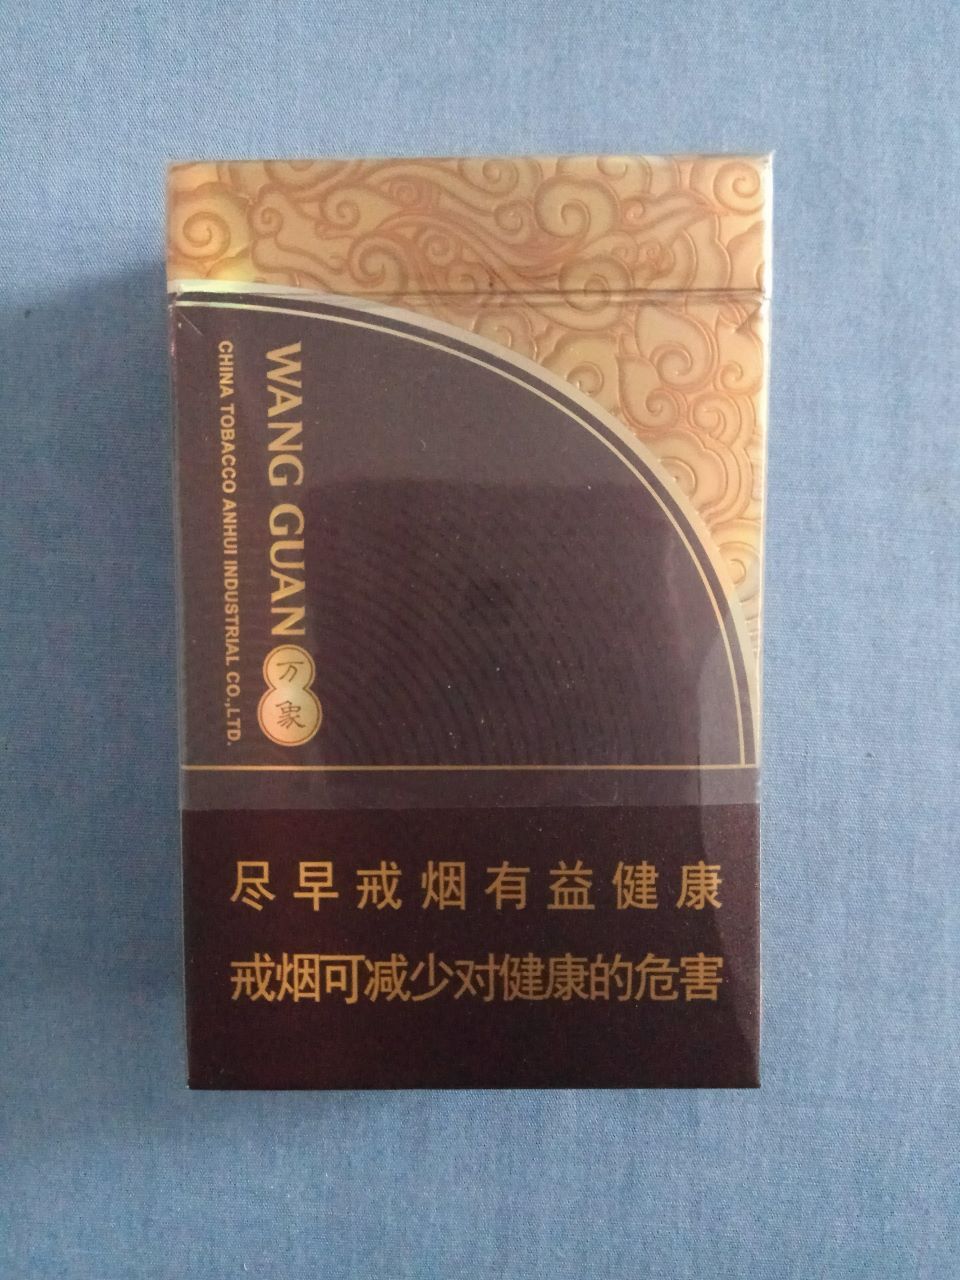 王冠雪茄(万象,16版尽早戒烟)